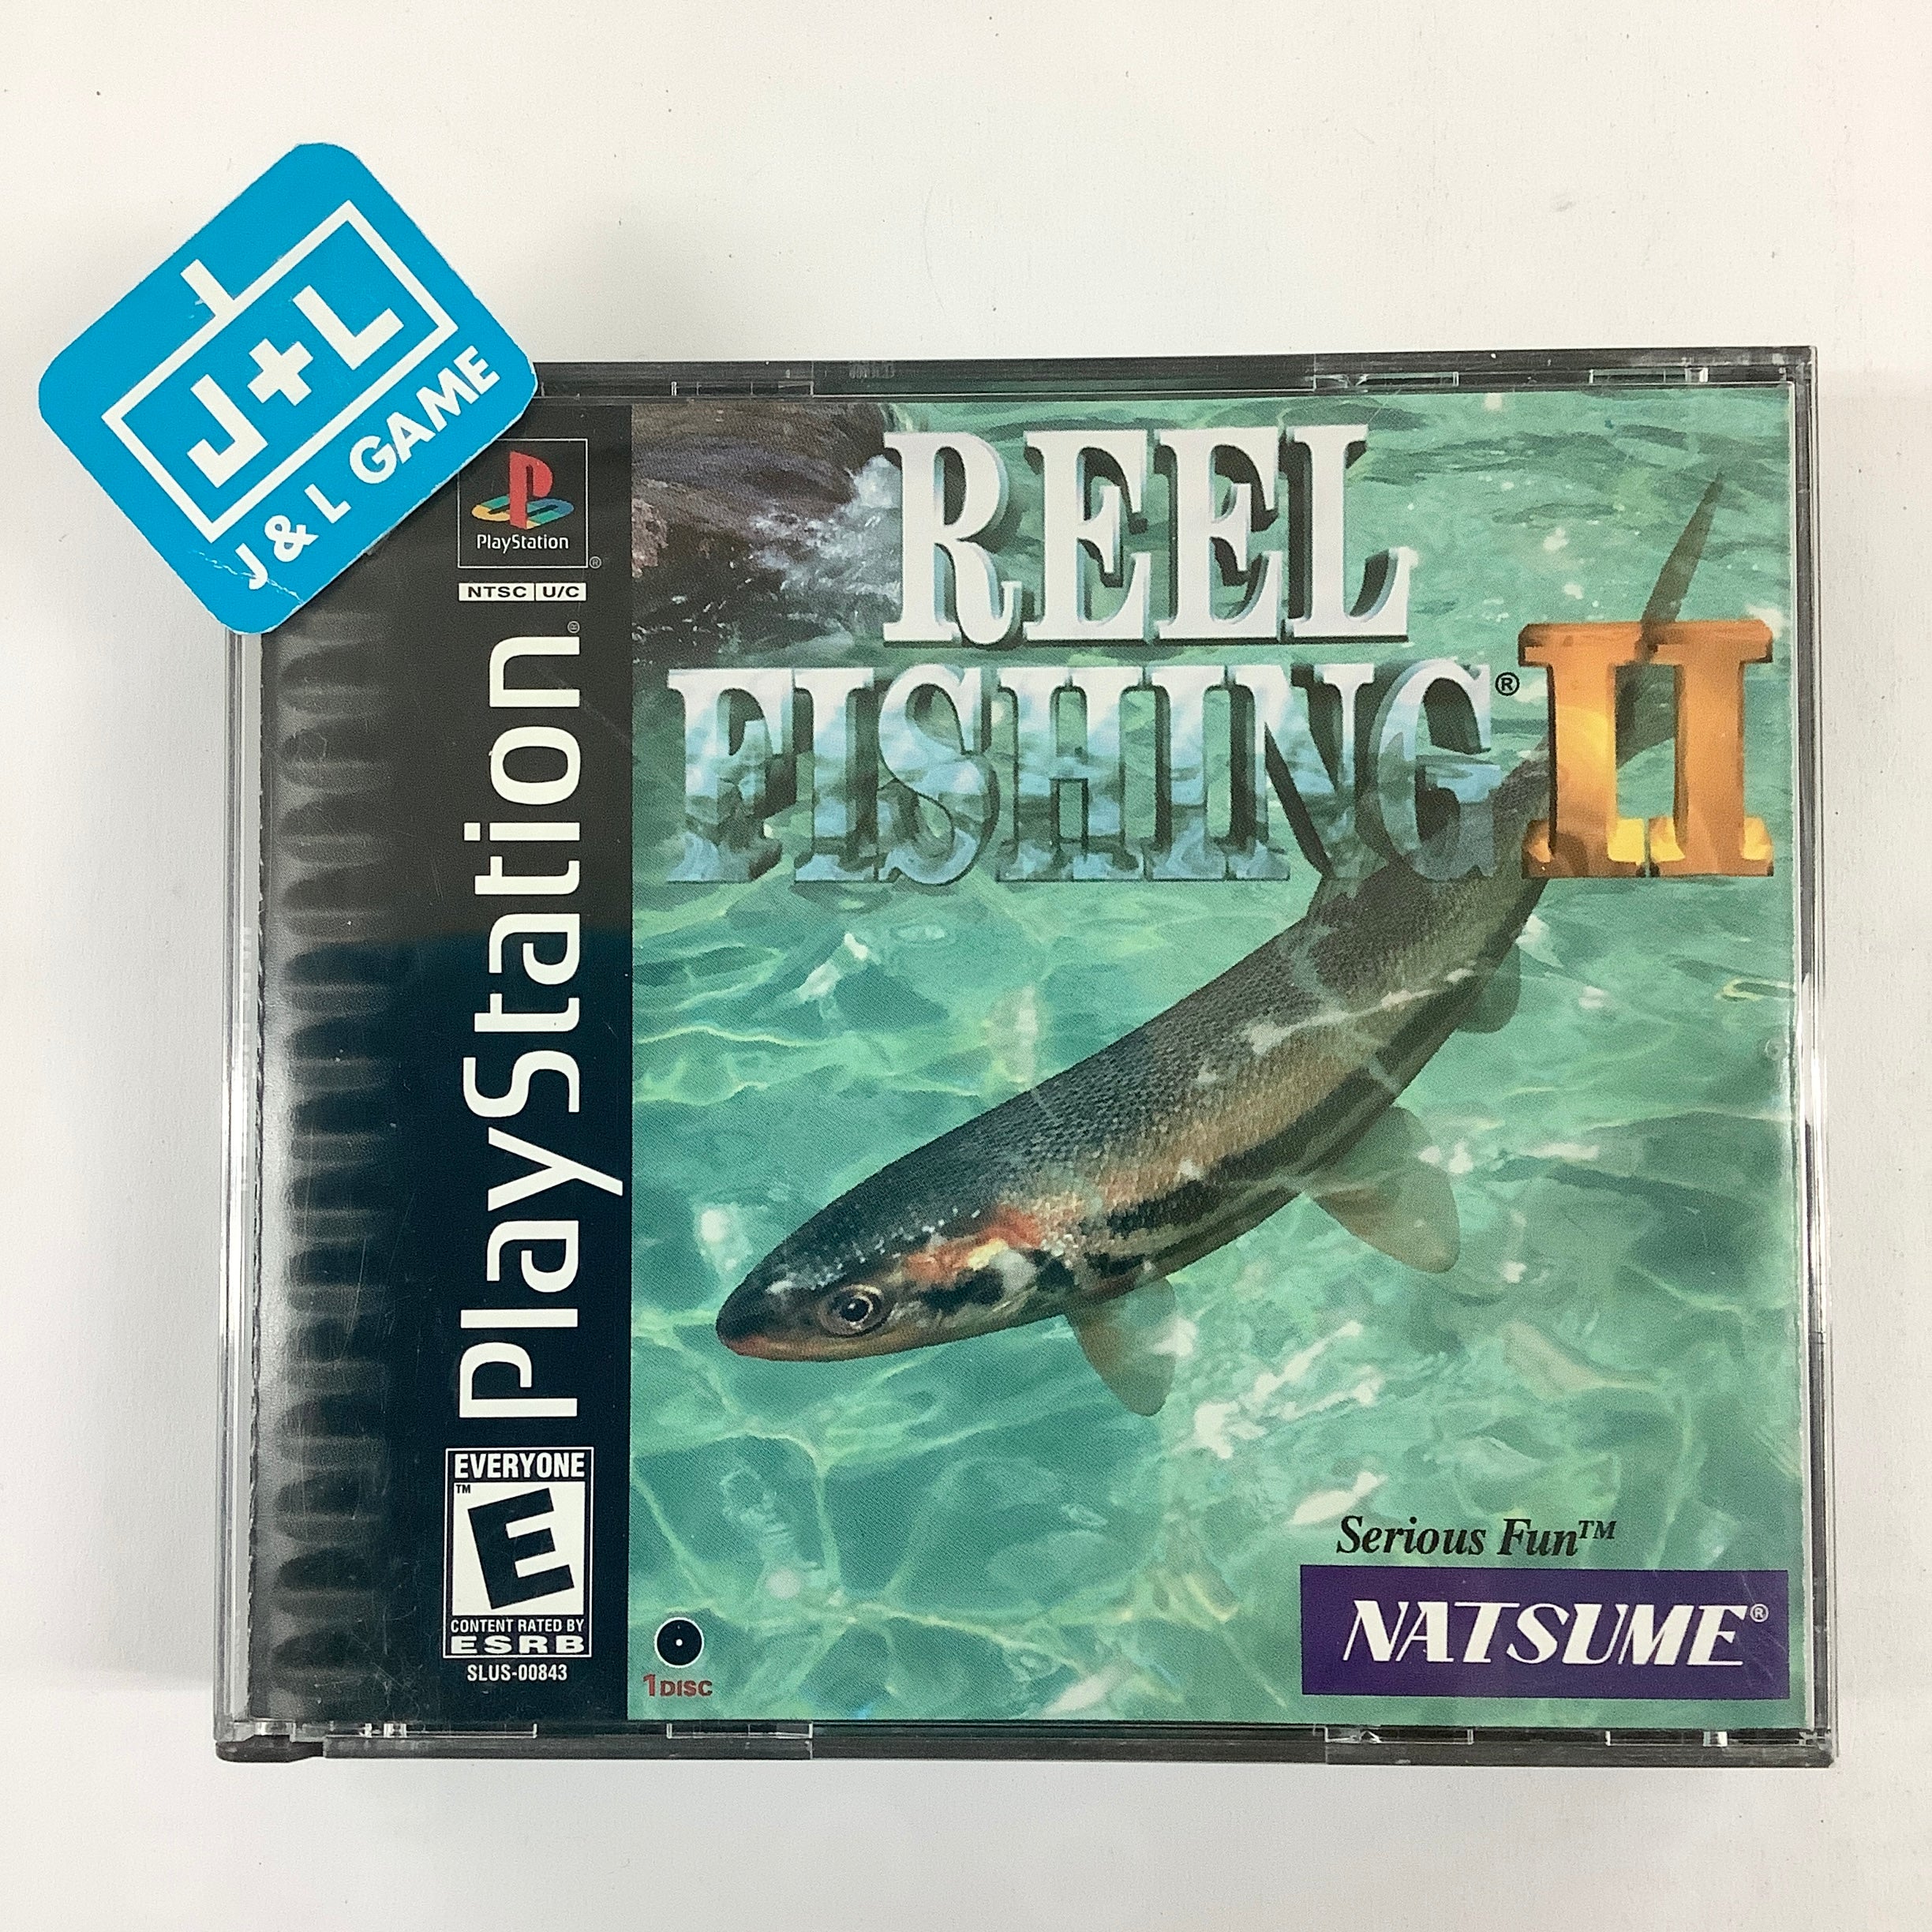 Reel Fishing III Playstation 2